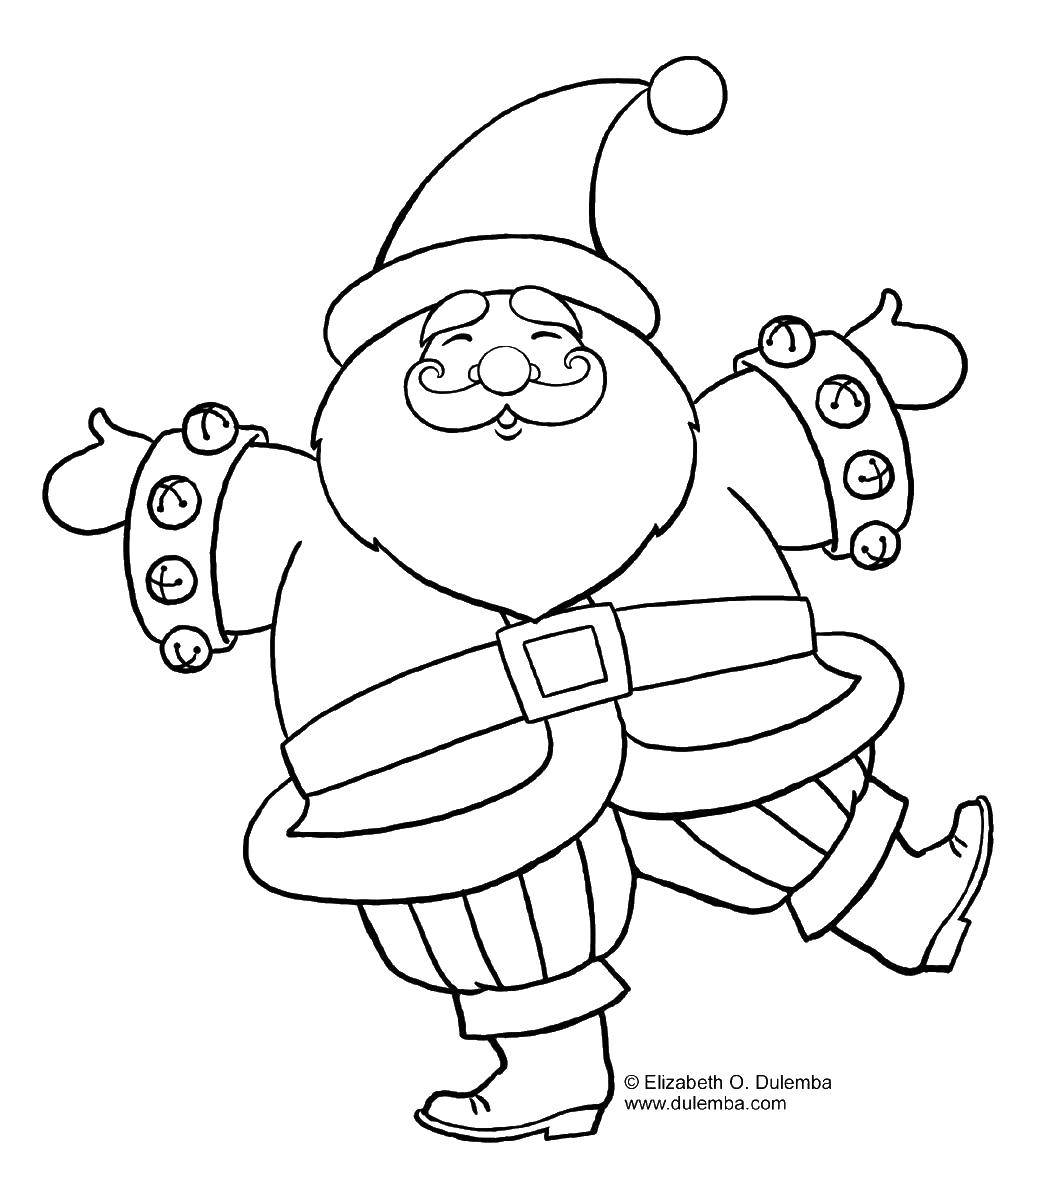 Coloring Santa Claus. Category Christmas. Tags:  Santa, belt, boots.